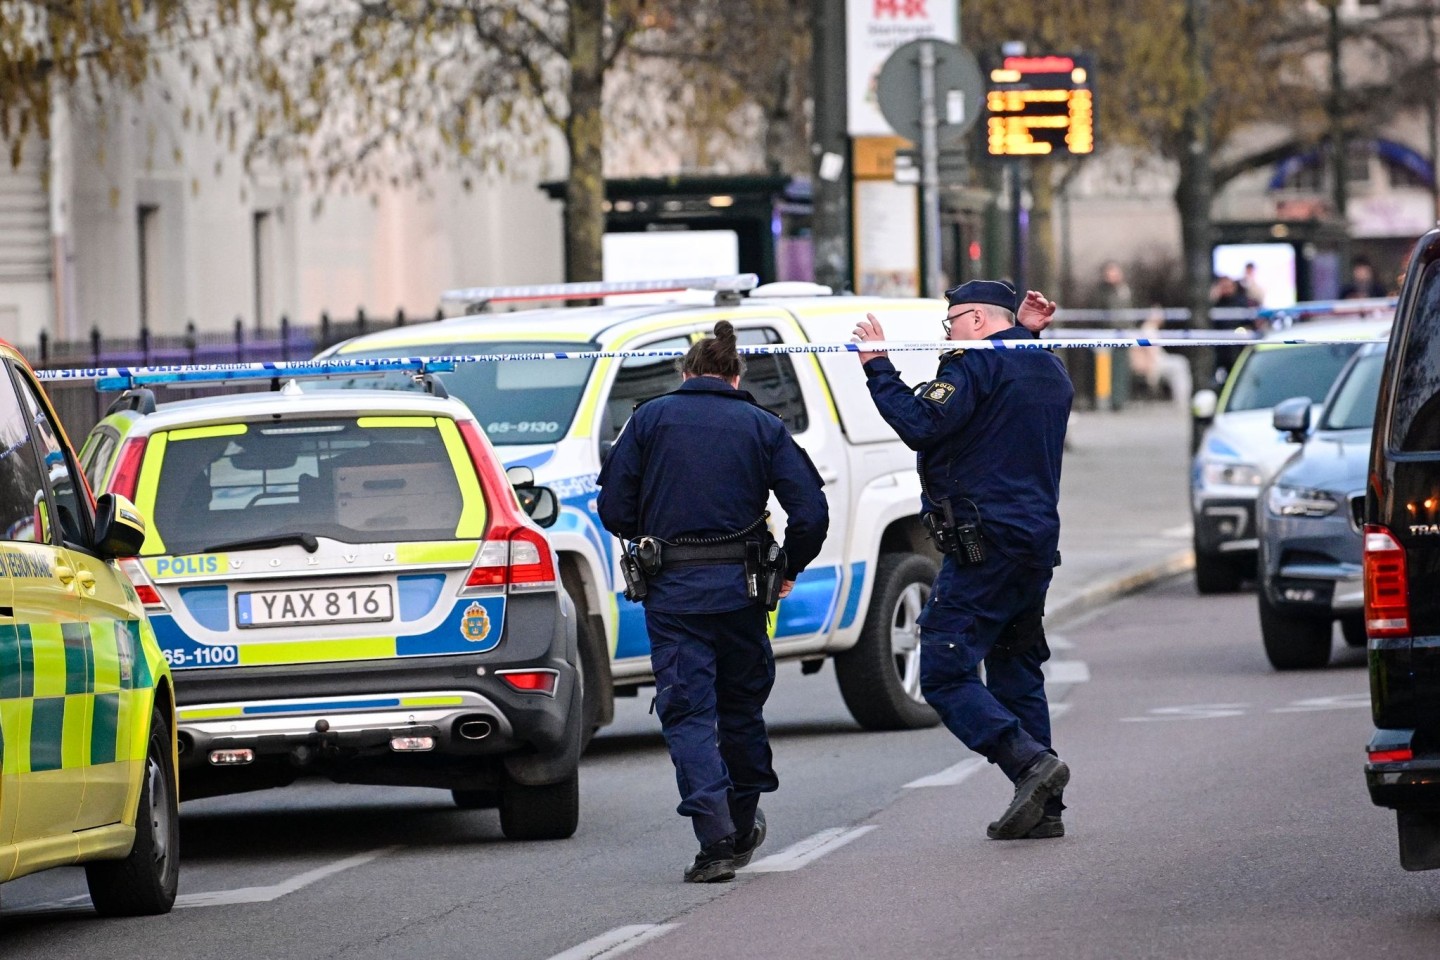 Polizisten im südschwedischen Malmö. Bei einem Vorfall an einer Schule sind dort zwei Frauen getötet worden.